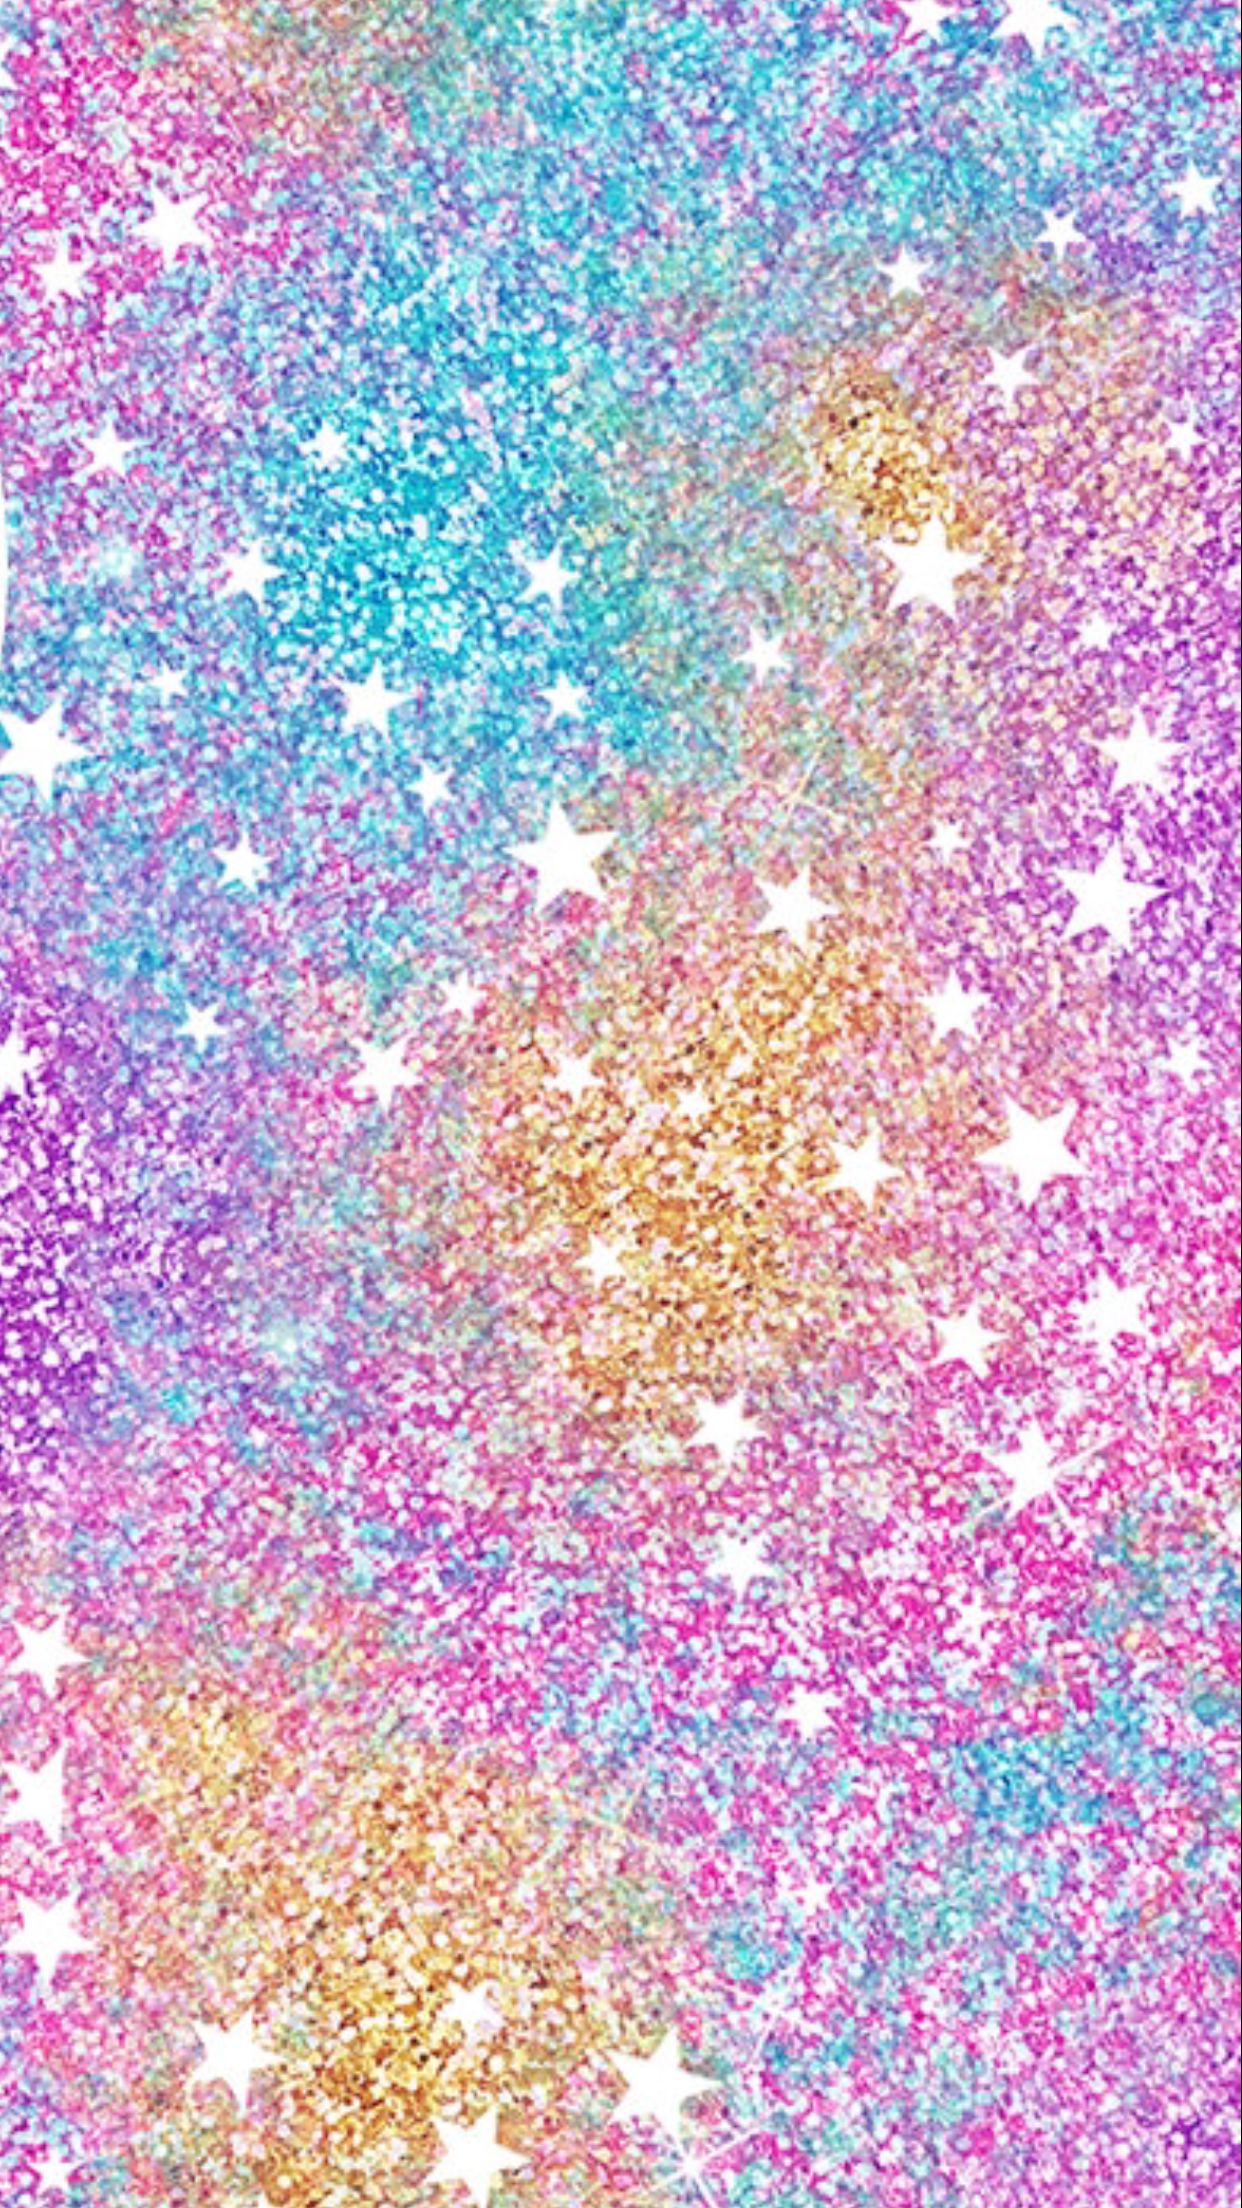 Glitter Regenbogen iPhone Hintergrundbilder. ipcwallpaper. iPhone wallpaper glitter, Glitter wallpaper, Glitter phone wallpaper